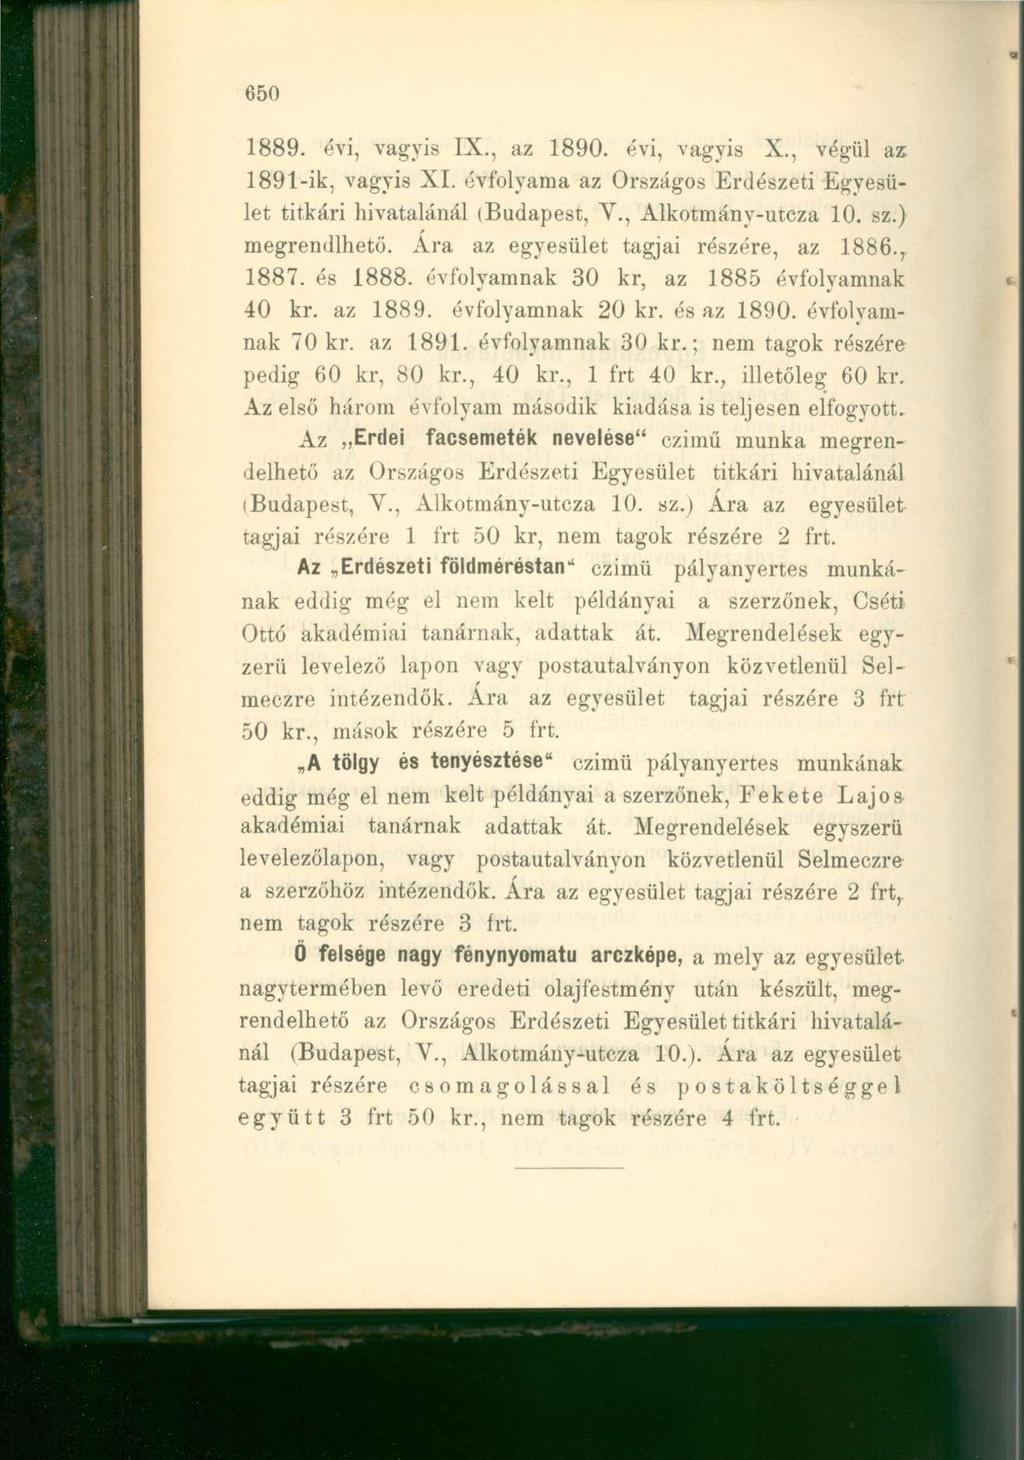 1889. évi, vagyis IX., az 1890. évi, vagyis X., végül az. 1891-ik, vagyis XI. évfolyama az Országos Erdészeti Egyesület titkári hivatalánál (Budapest, V., Alkotmány-utcza 10. sz.) megrémültető.